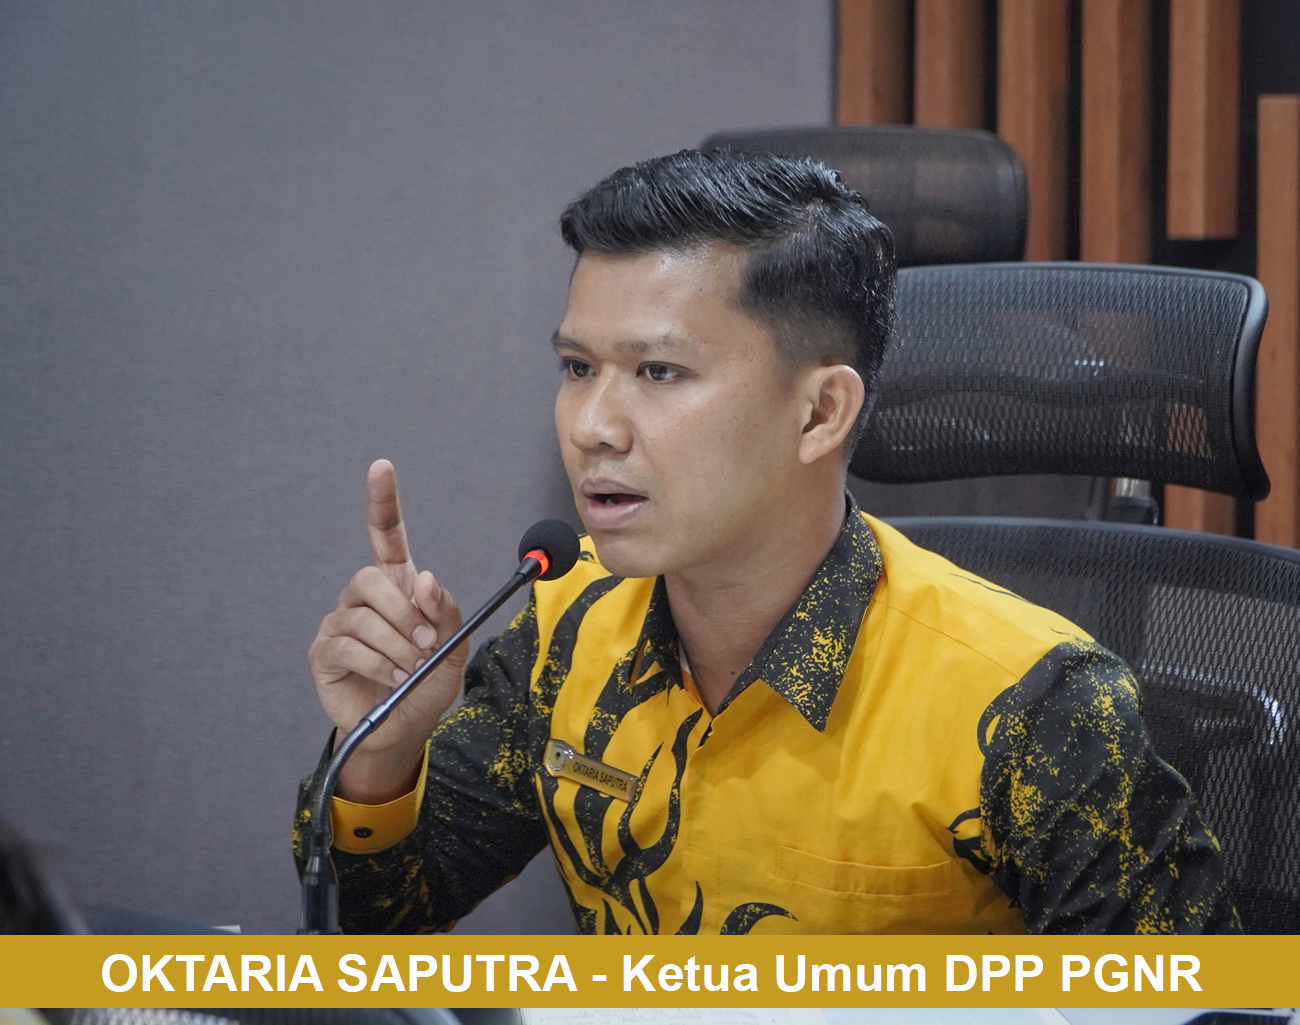 Ketua DPP PGNR Oktaria Saputra: Mempertanyakan Kinerja Penyelenggara Pemilu